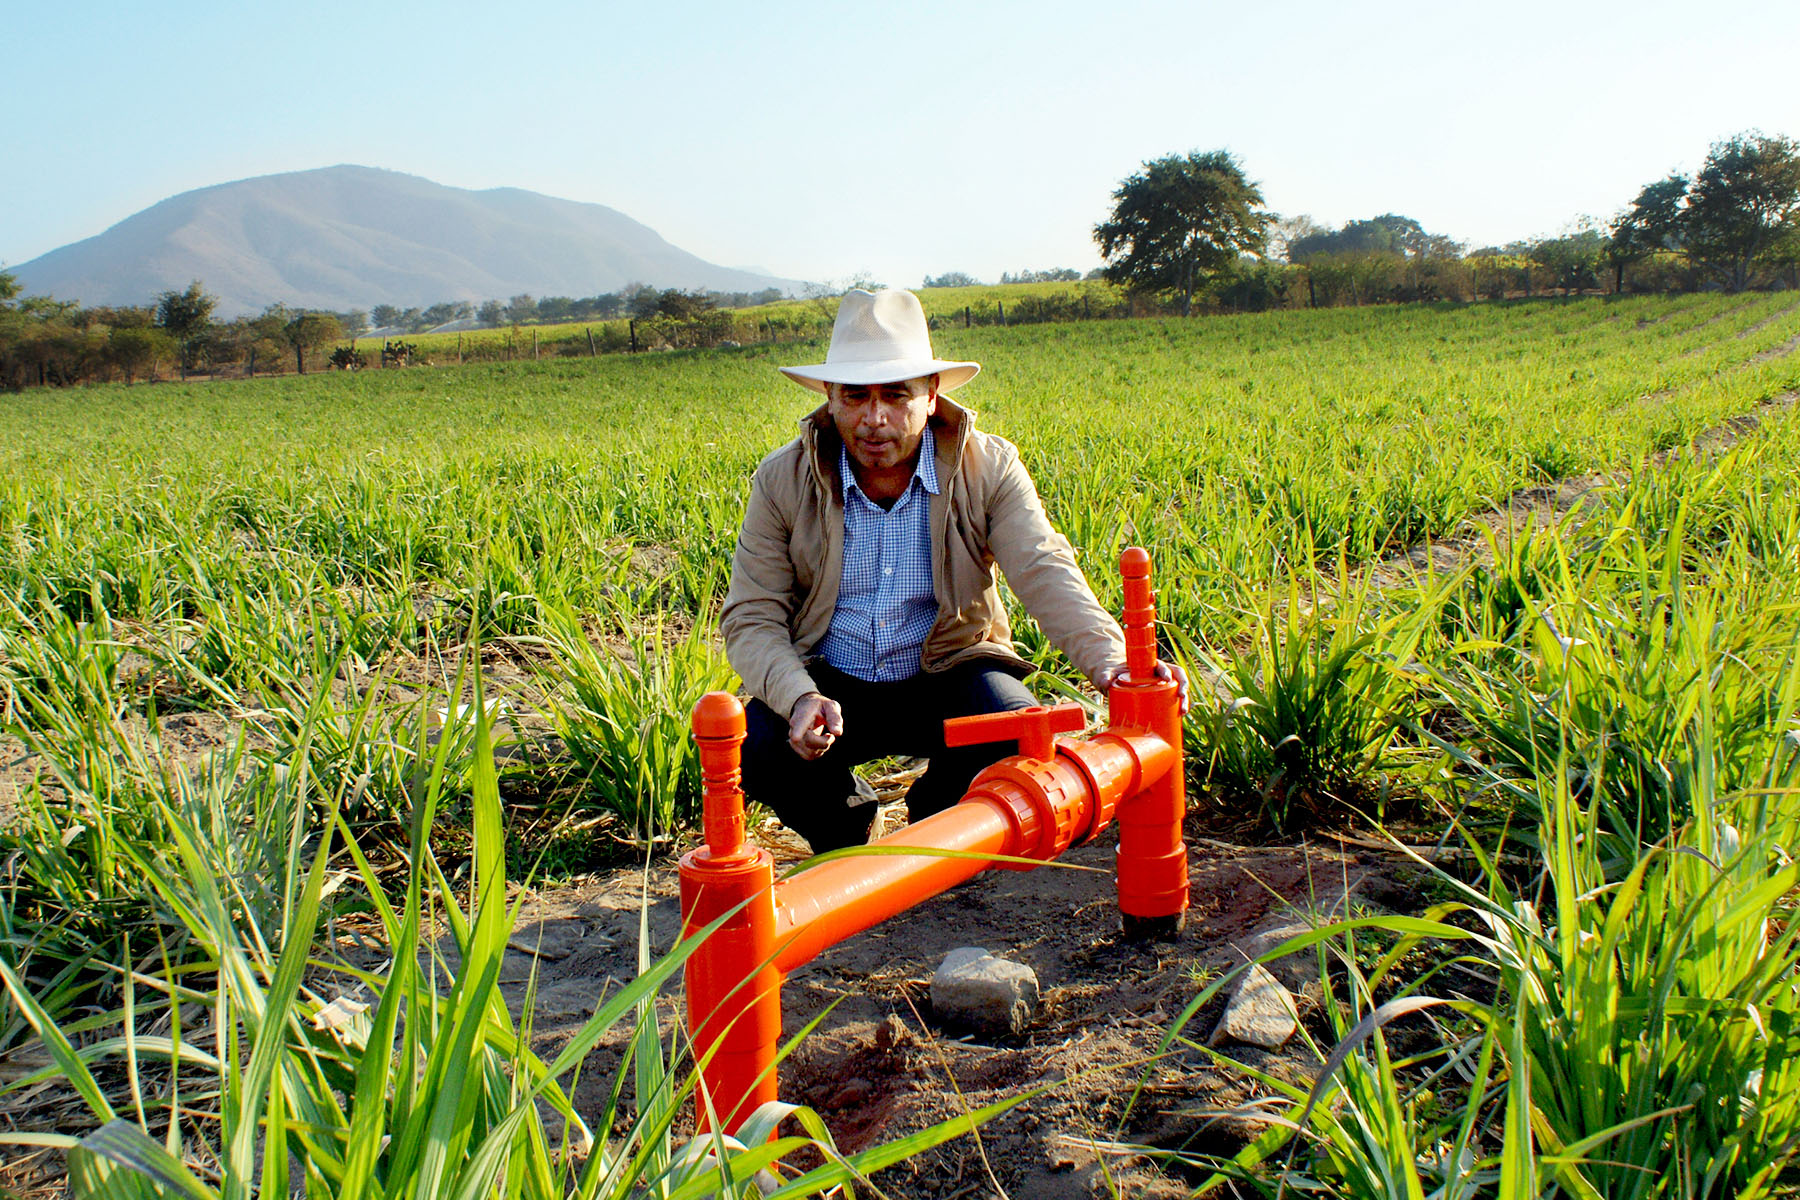 Sistema de riego en plantación de caña. Jalisco, México.